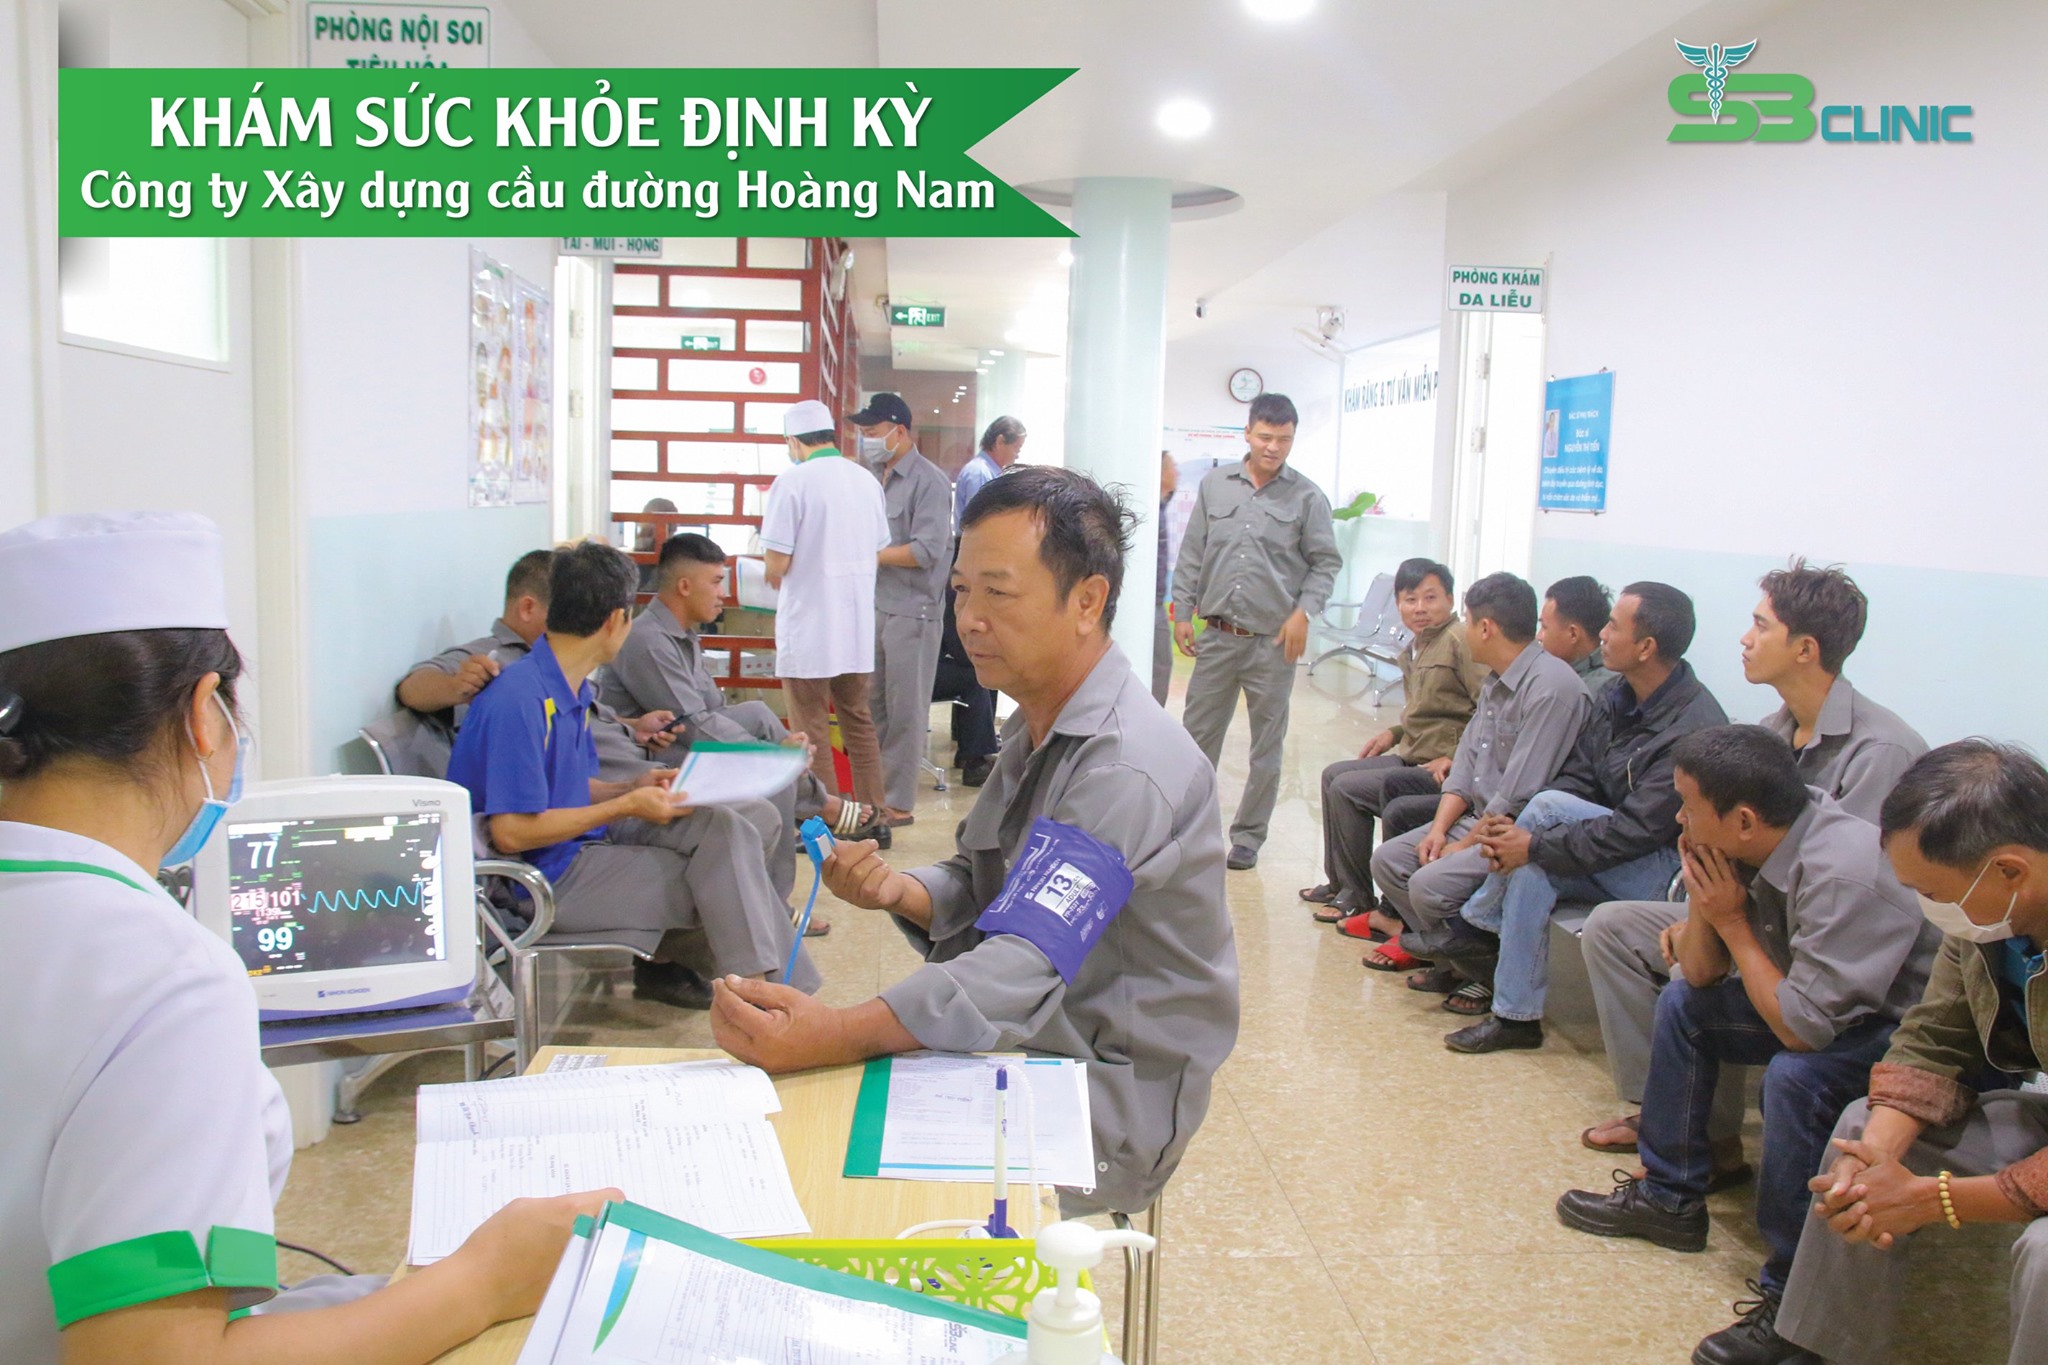 Gần 100 doanh nghiệp chọn Sài Gòn - Ban Mê để khám sức khỏe định kỳ